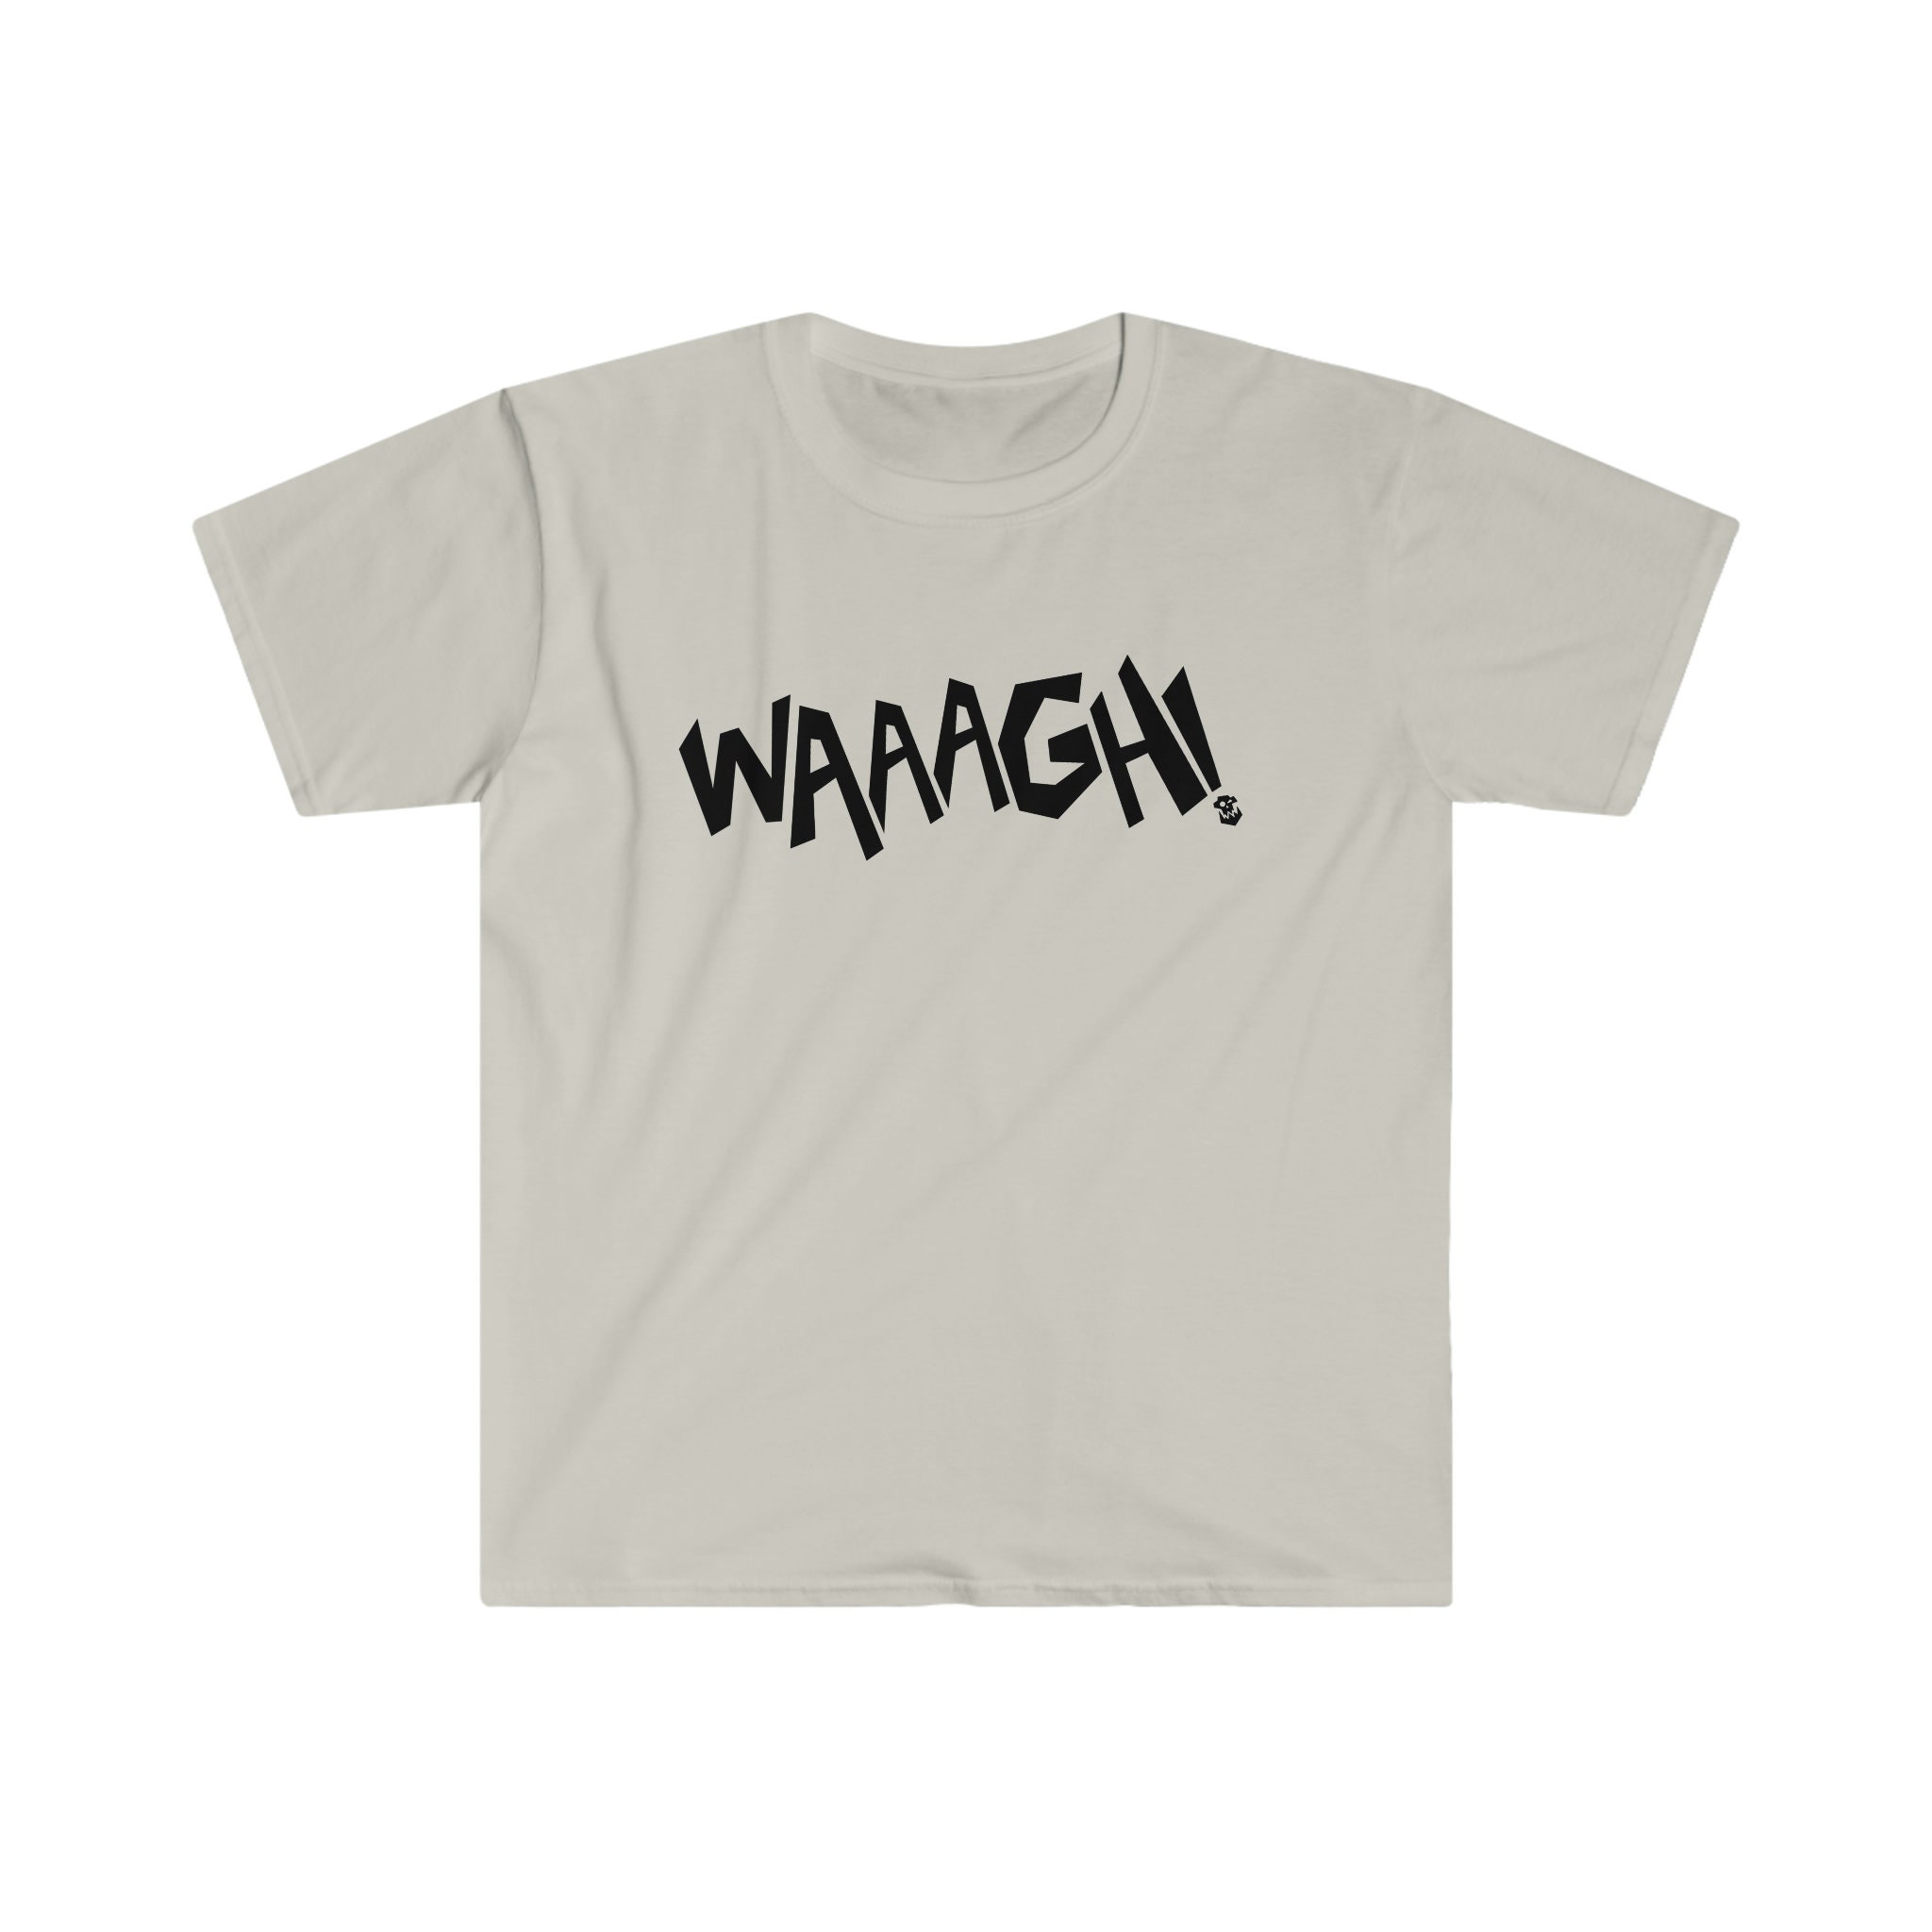 Waaagh Tee 40K Ork Tshirt Soft T-shirt -